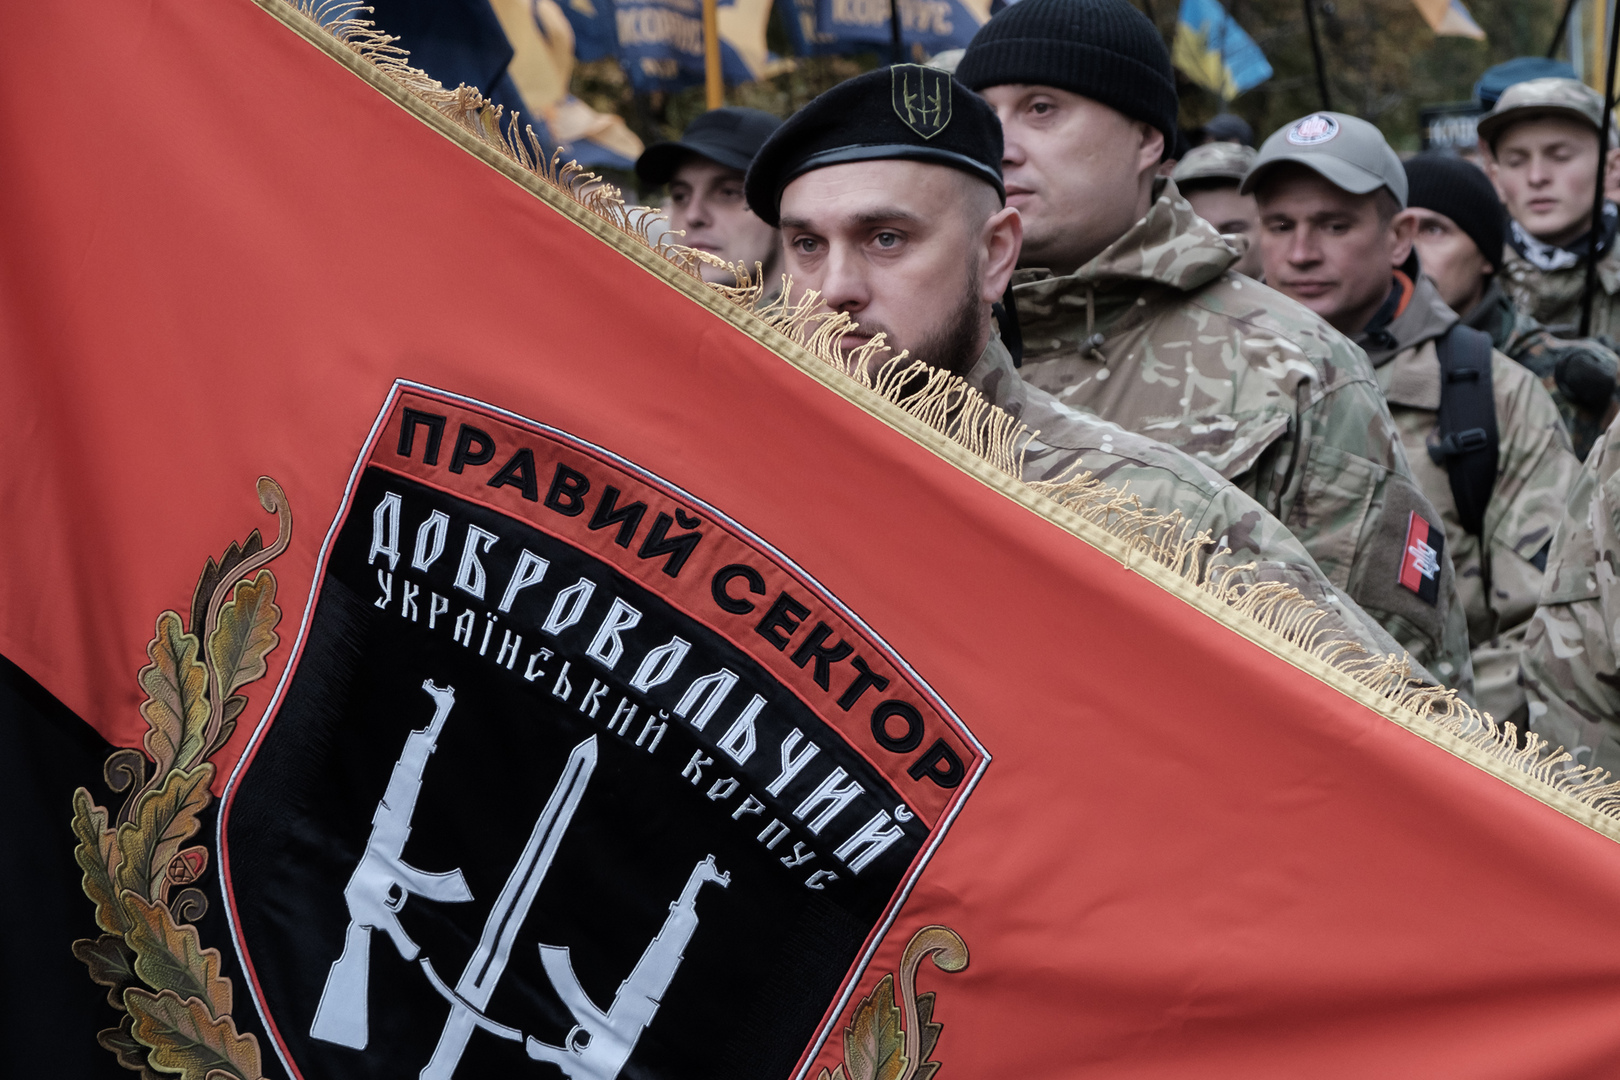 دونيتسك تعلن عن استعدادها للتصرفات العدائية من جانب كييف